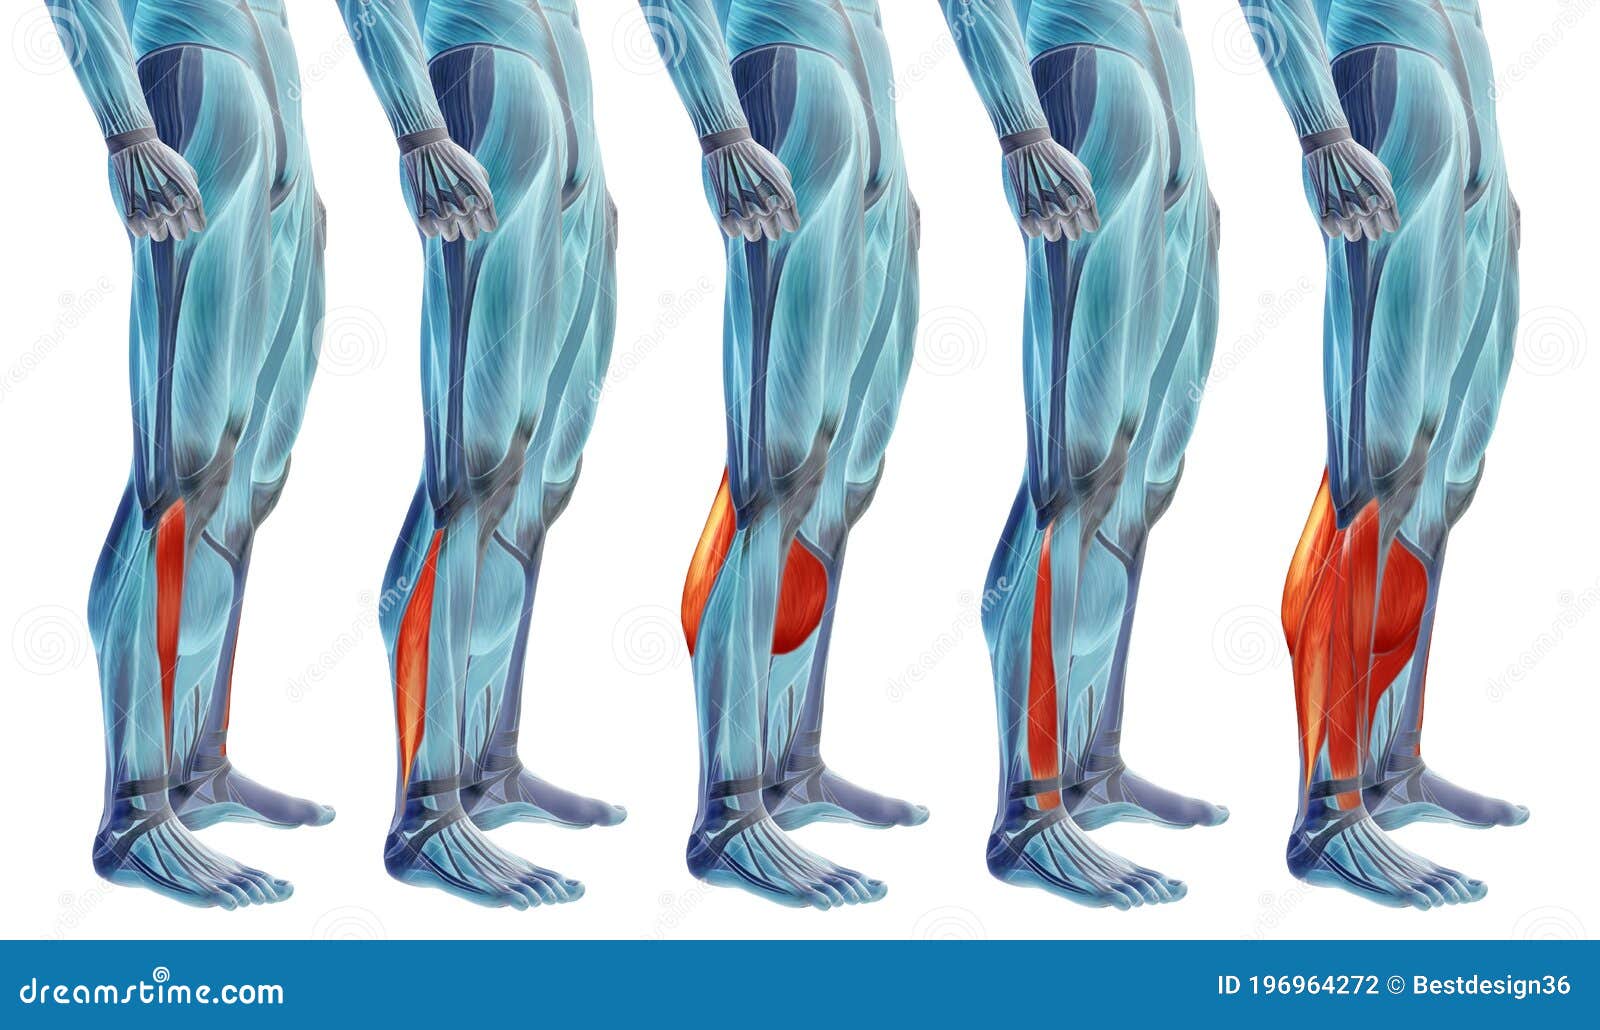 人体腿部肌肉骨骼解剖学3D模型 - TurboSquid 1398456